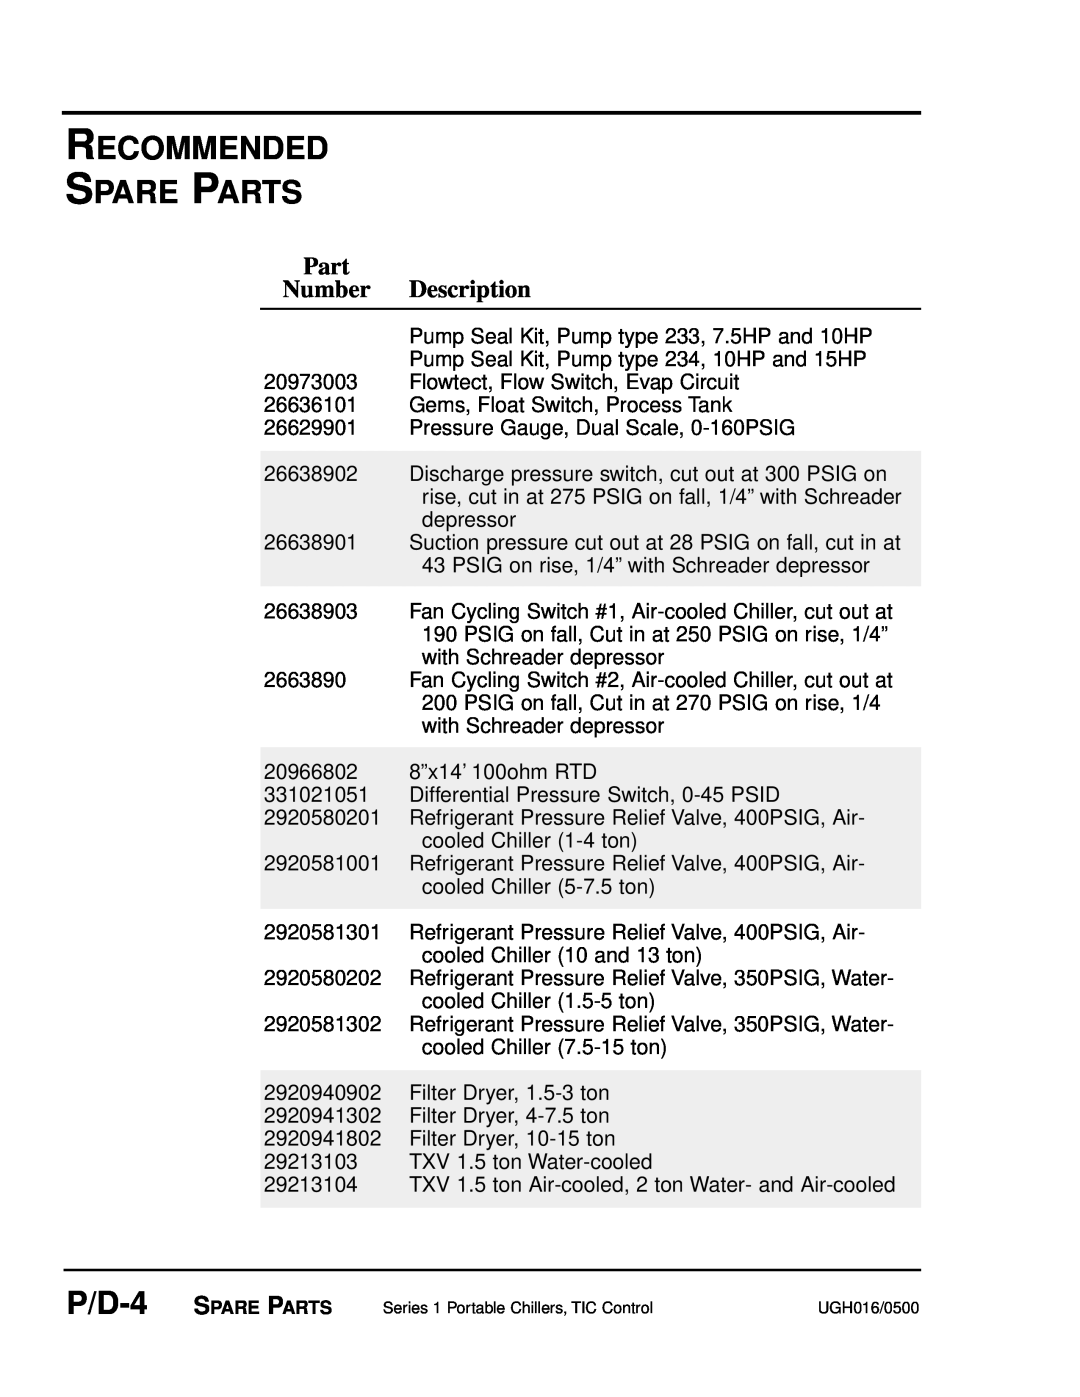 Conair UGH016/0500 manual Recommended Spare Parts, Part Number Description, Flowtect, Flow Switch, Evap Circuit 